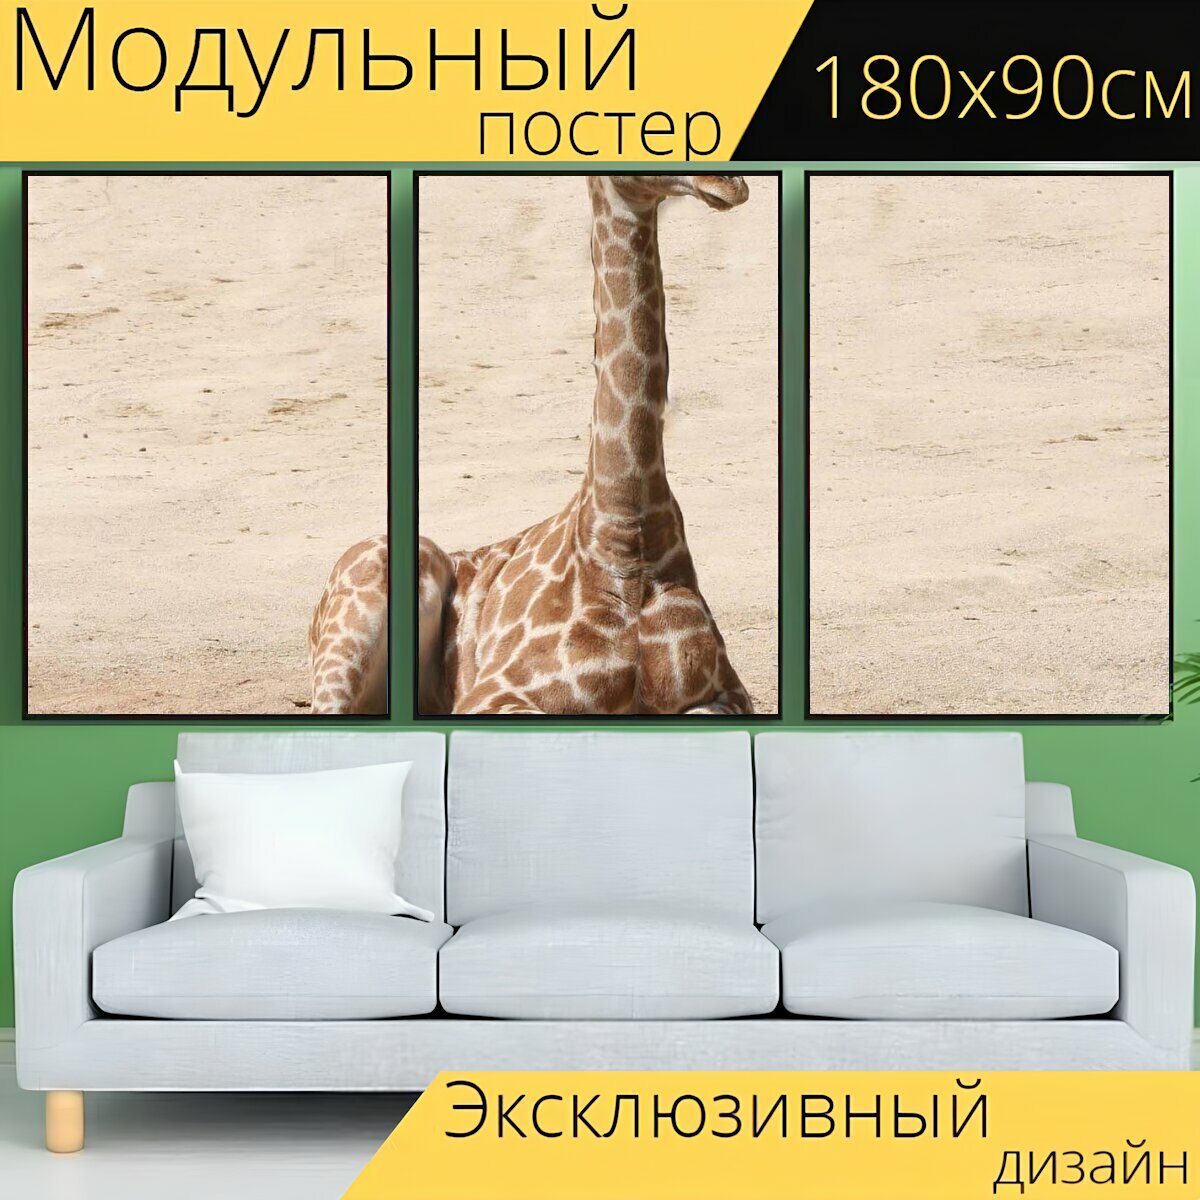 Модульный постер "Жирафа, детская жираф, млекопитающее" 180 x 90 см. для интерьера